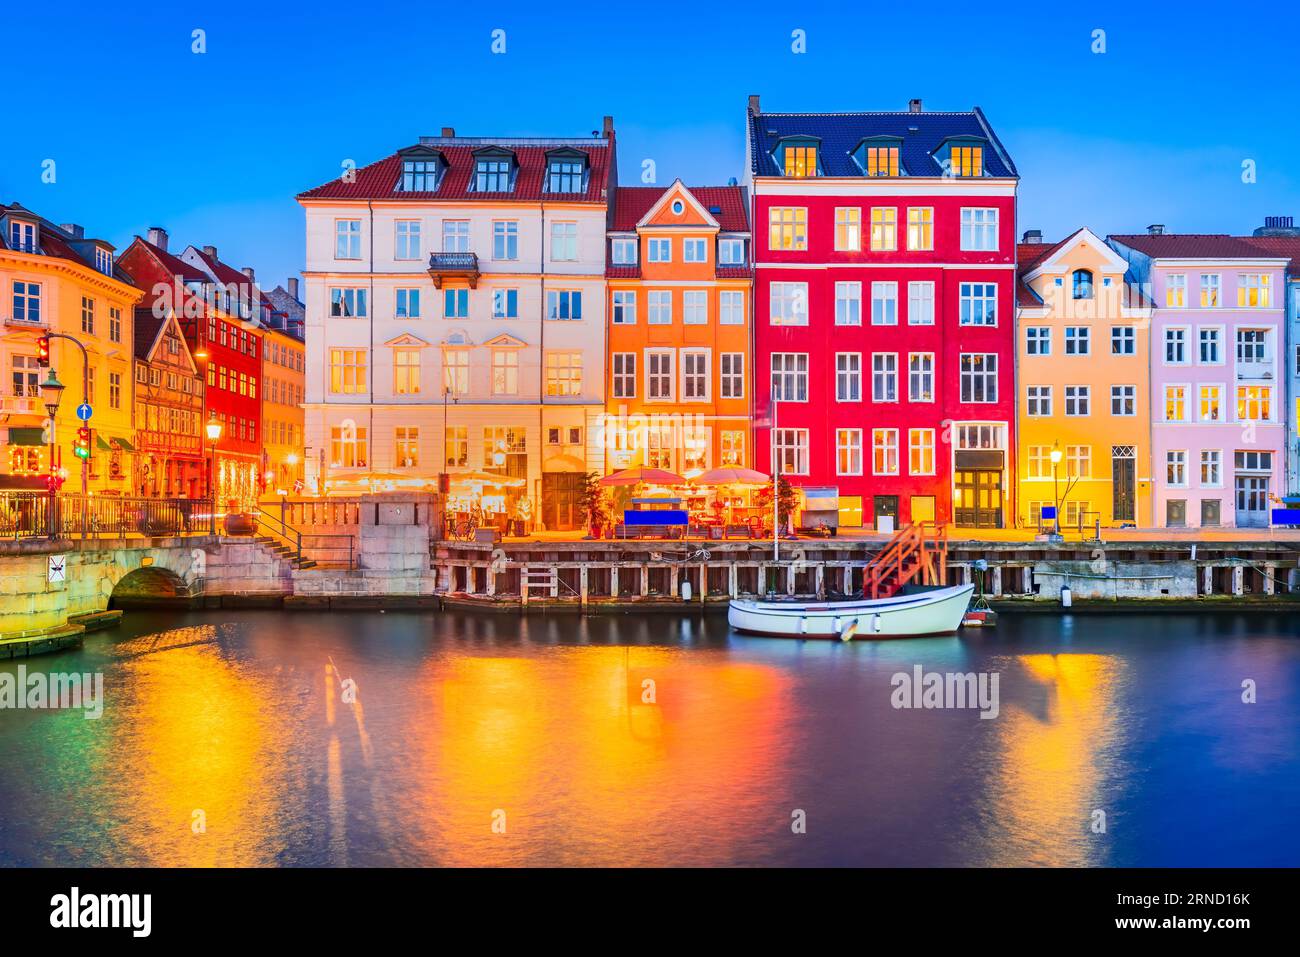 Der Charme von Kopenhagen, Dänemark in Nyhavn. Legendärer Kanal, farbenfrohes Nachtbild und atemberaubende Wasserreflexionen. Stockfoto